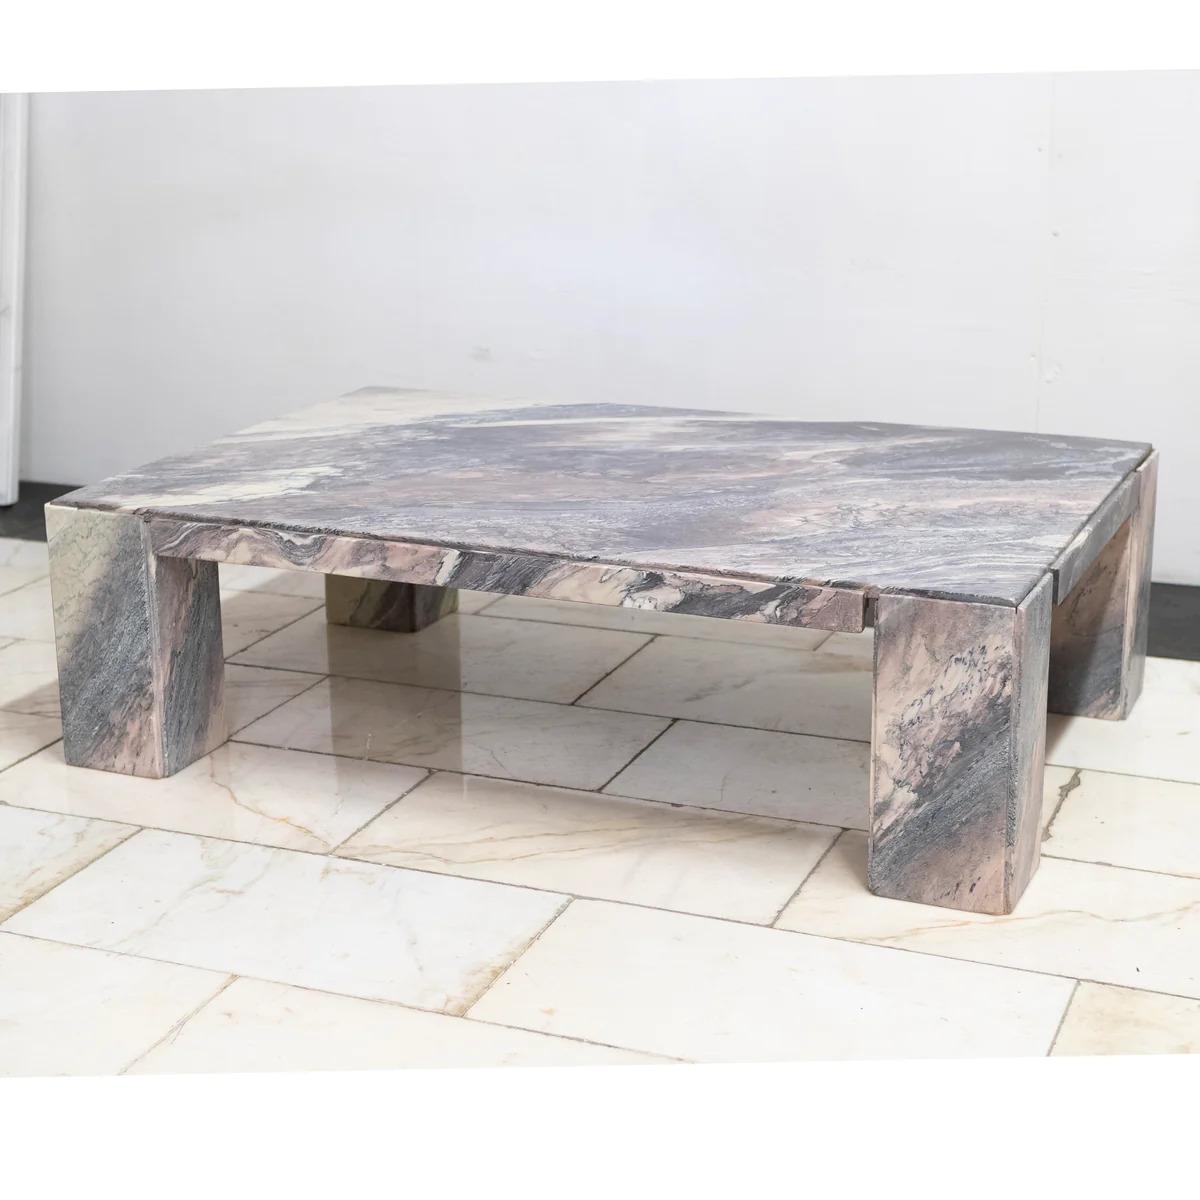 D'une belle simplicité, cette table en marbre recyclé offre une merveilleuse gamme de teintes mauves, violettes et roses provenant de l'énigmatique marbre italien. 

Le design minimaliste permet au marbre d'être le point central de cette table basse